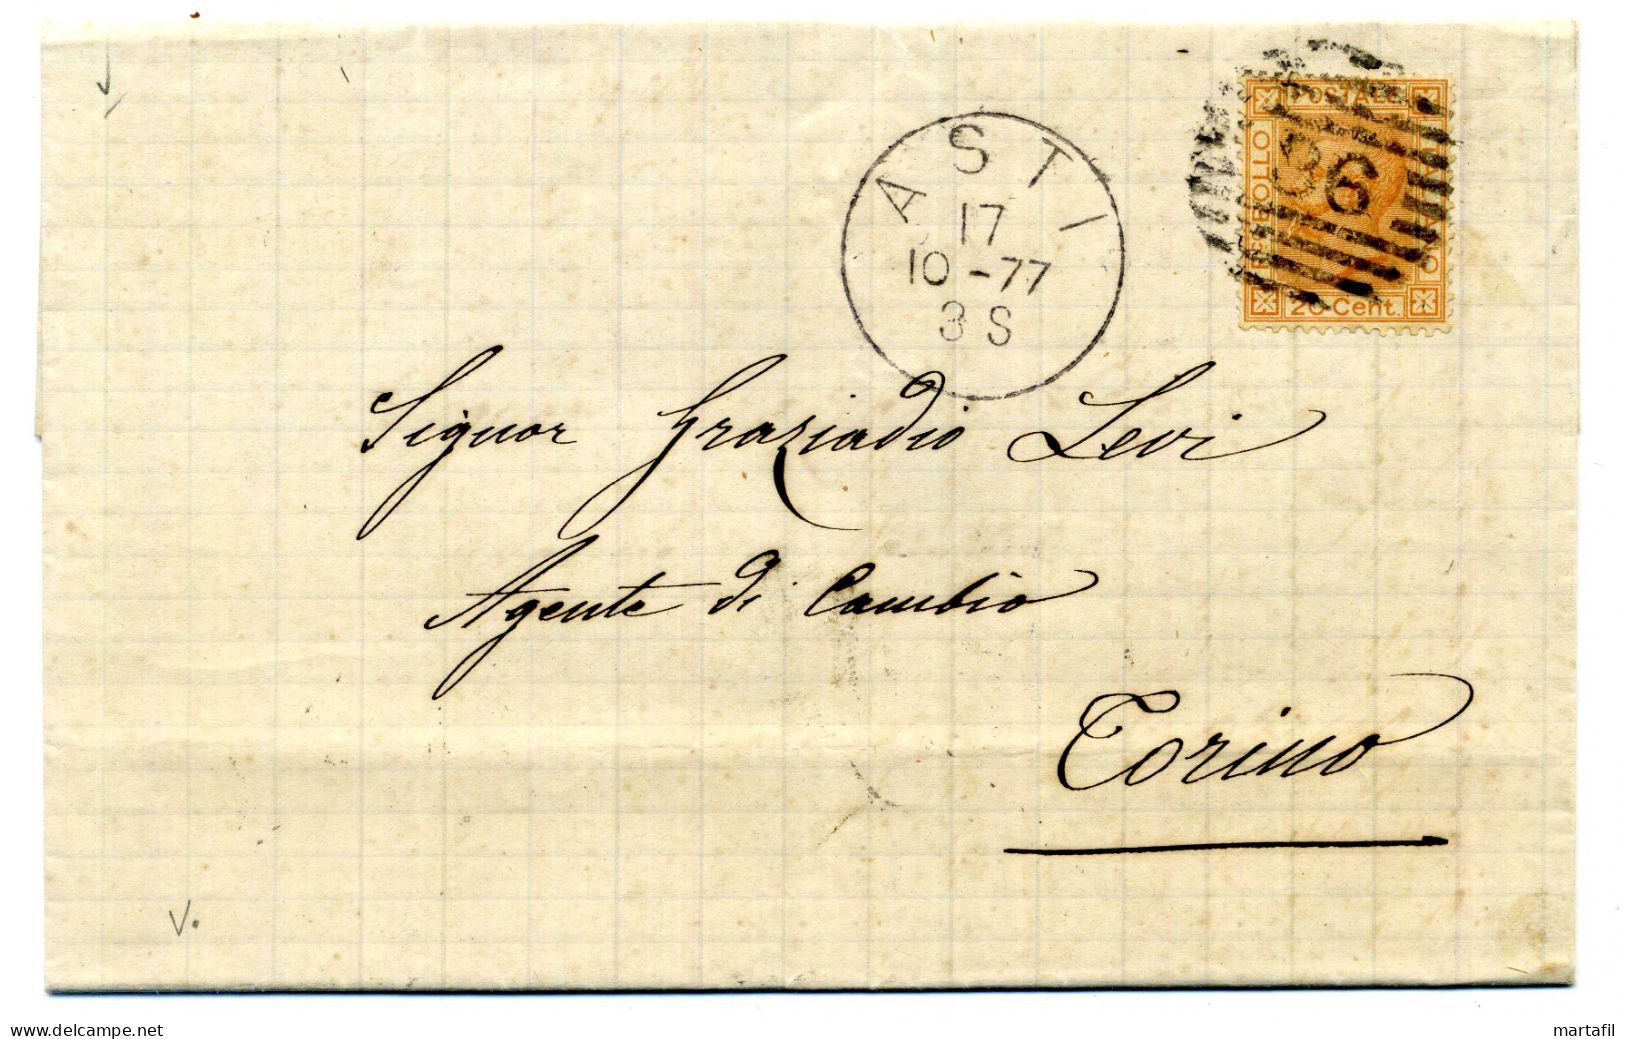 1877 Lettera Per Torino Da Asti, Affr. 20 Cent. - Poststempel